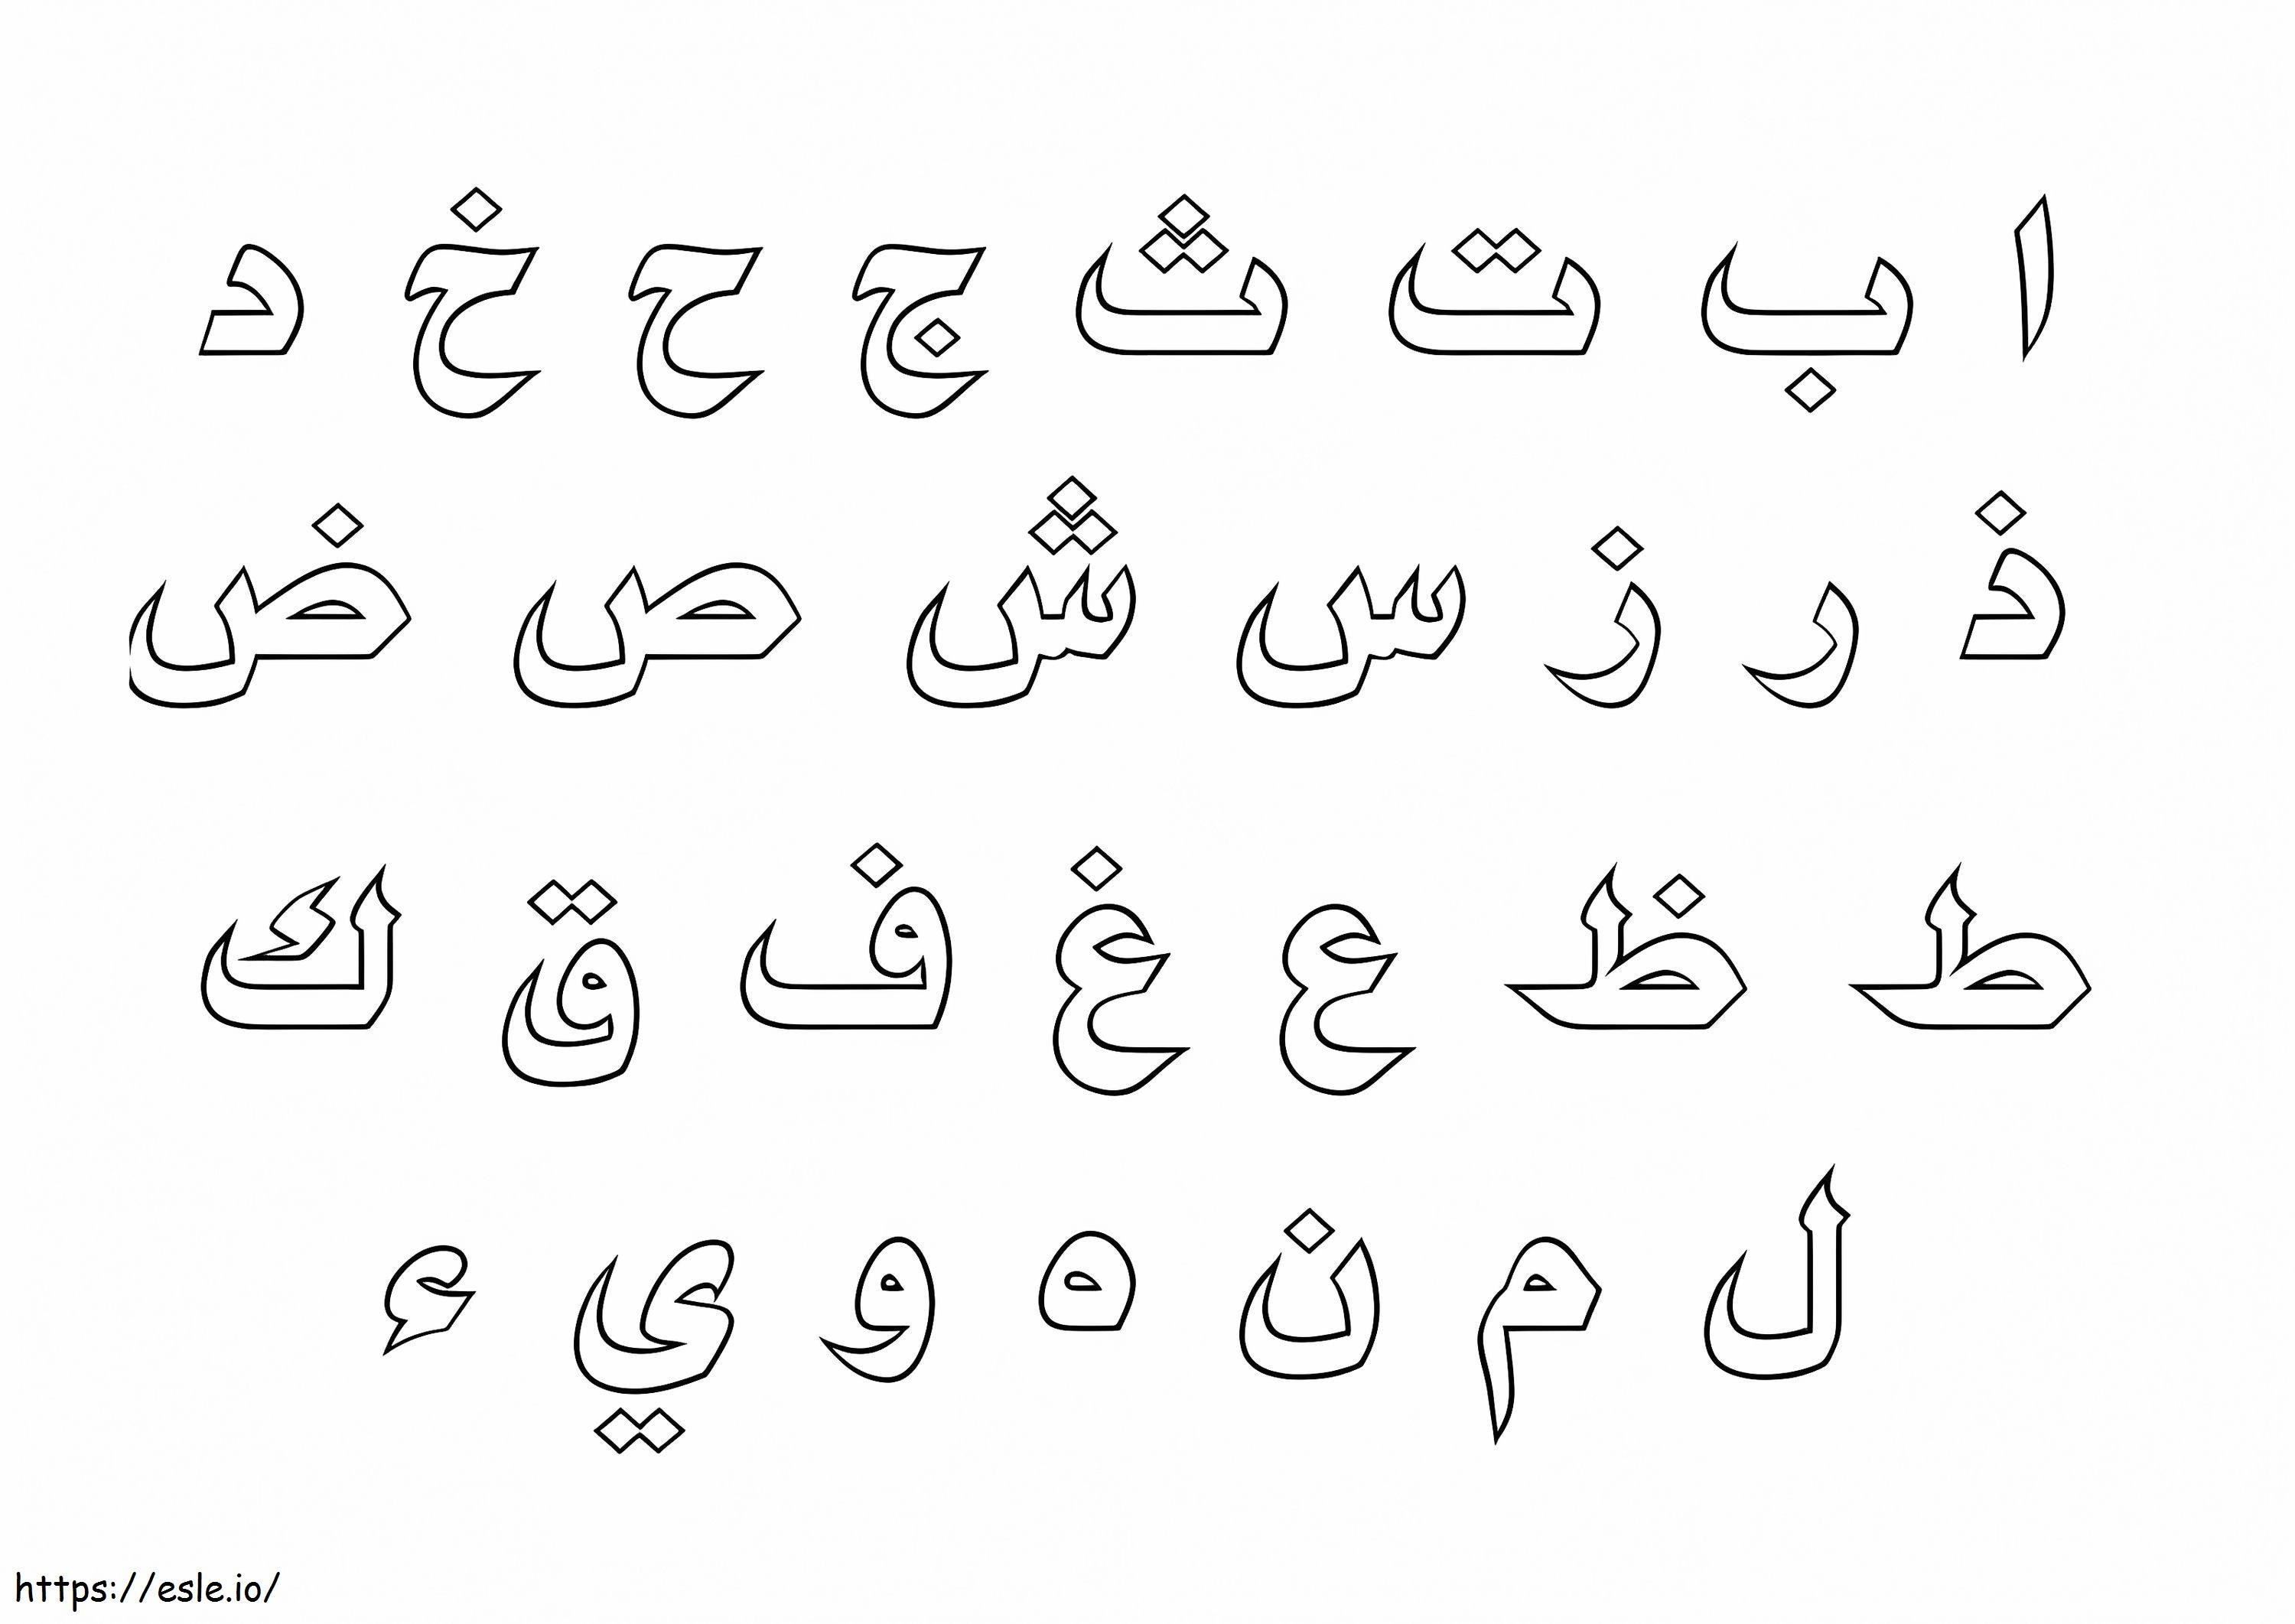 Alfabeto árabe imprimible para colorear